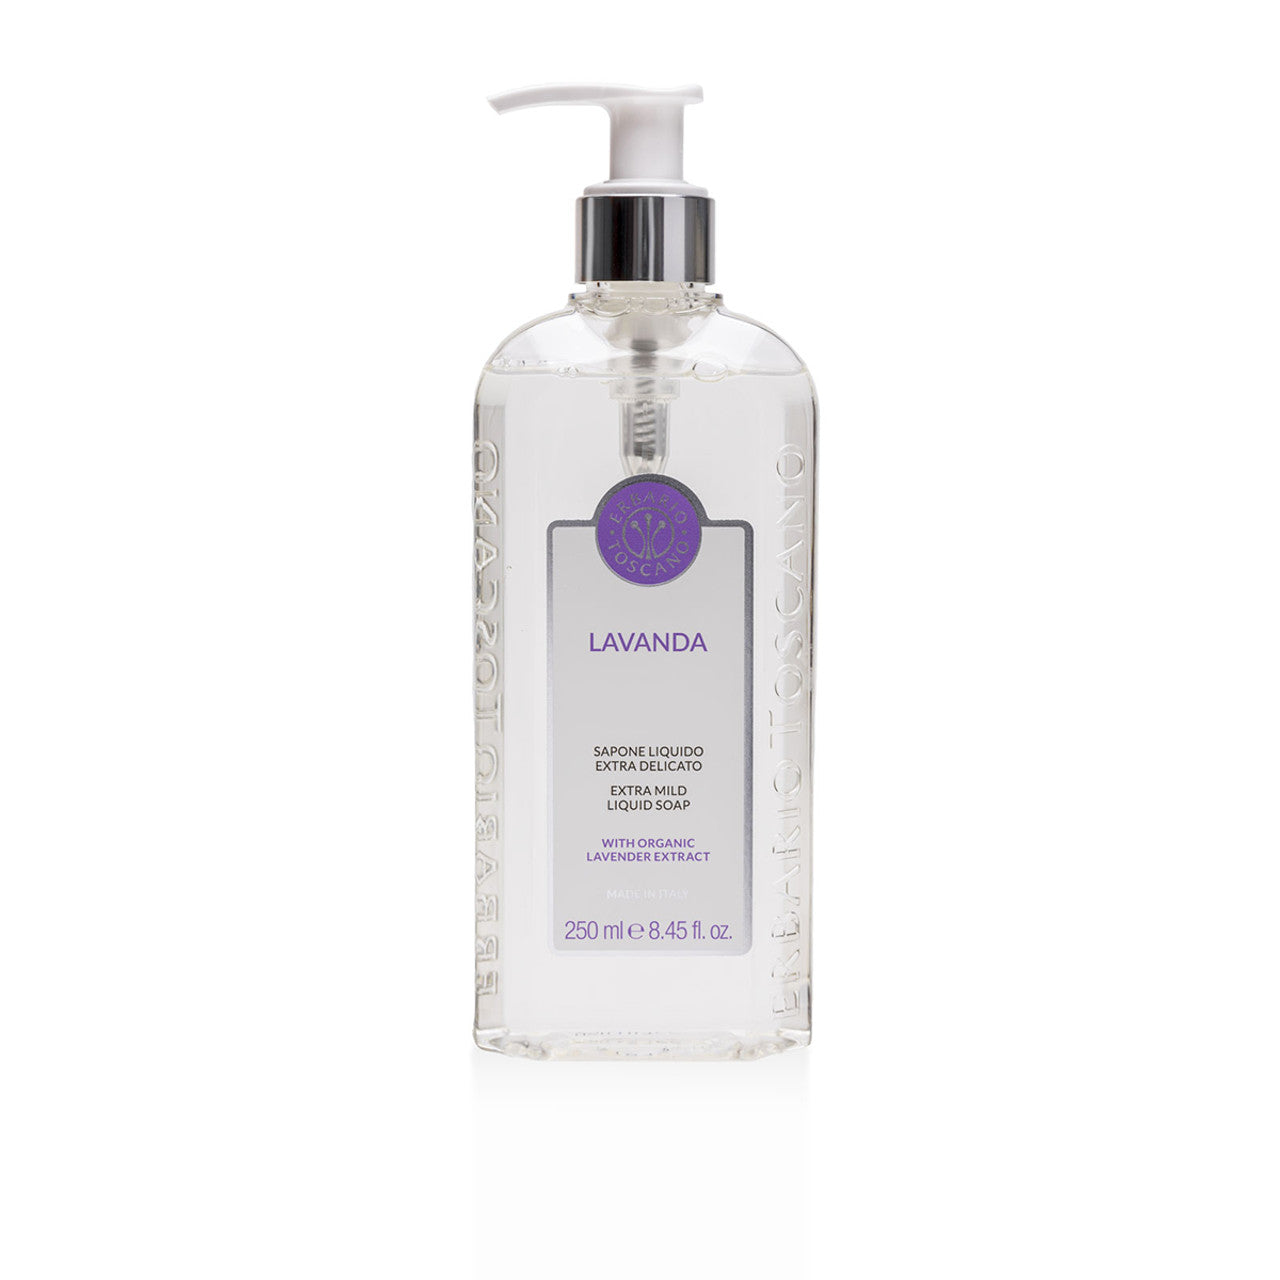 Erbario Toscano Extra Delicate Lavender Liquid Soap